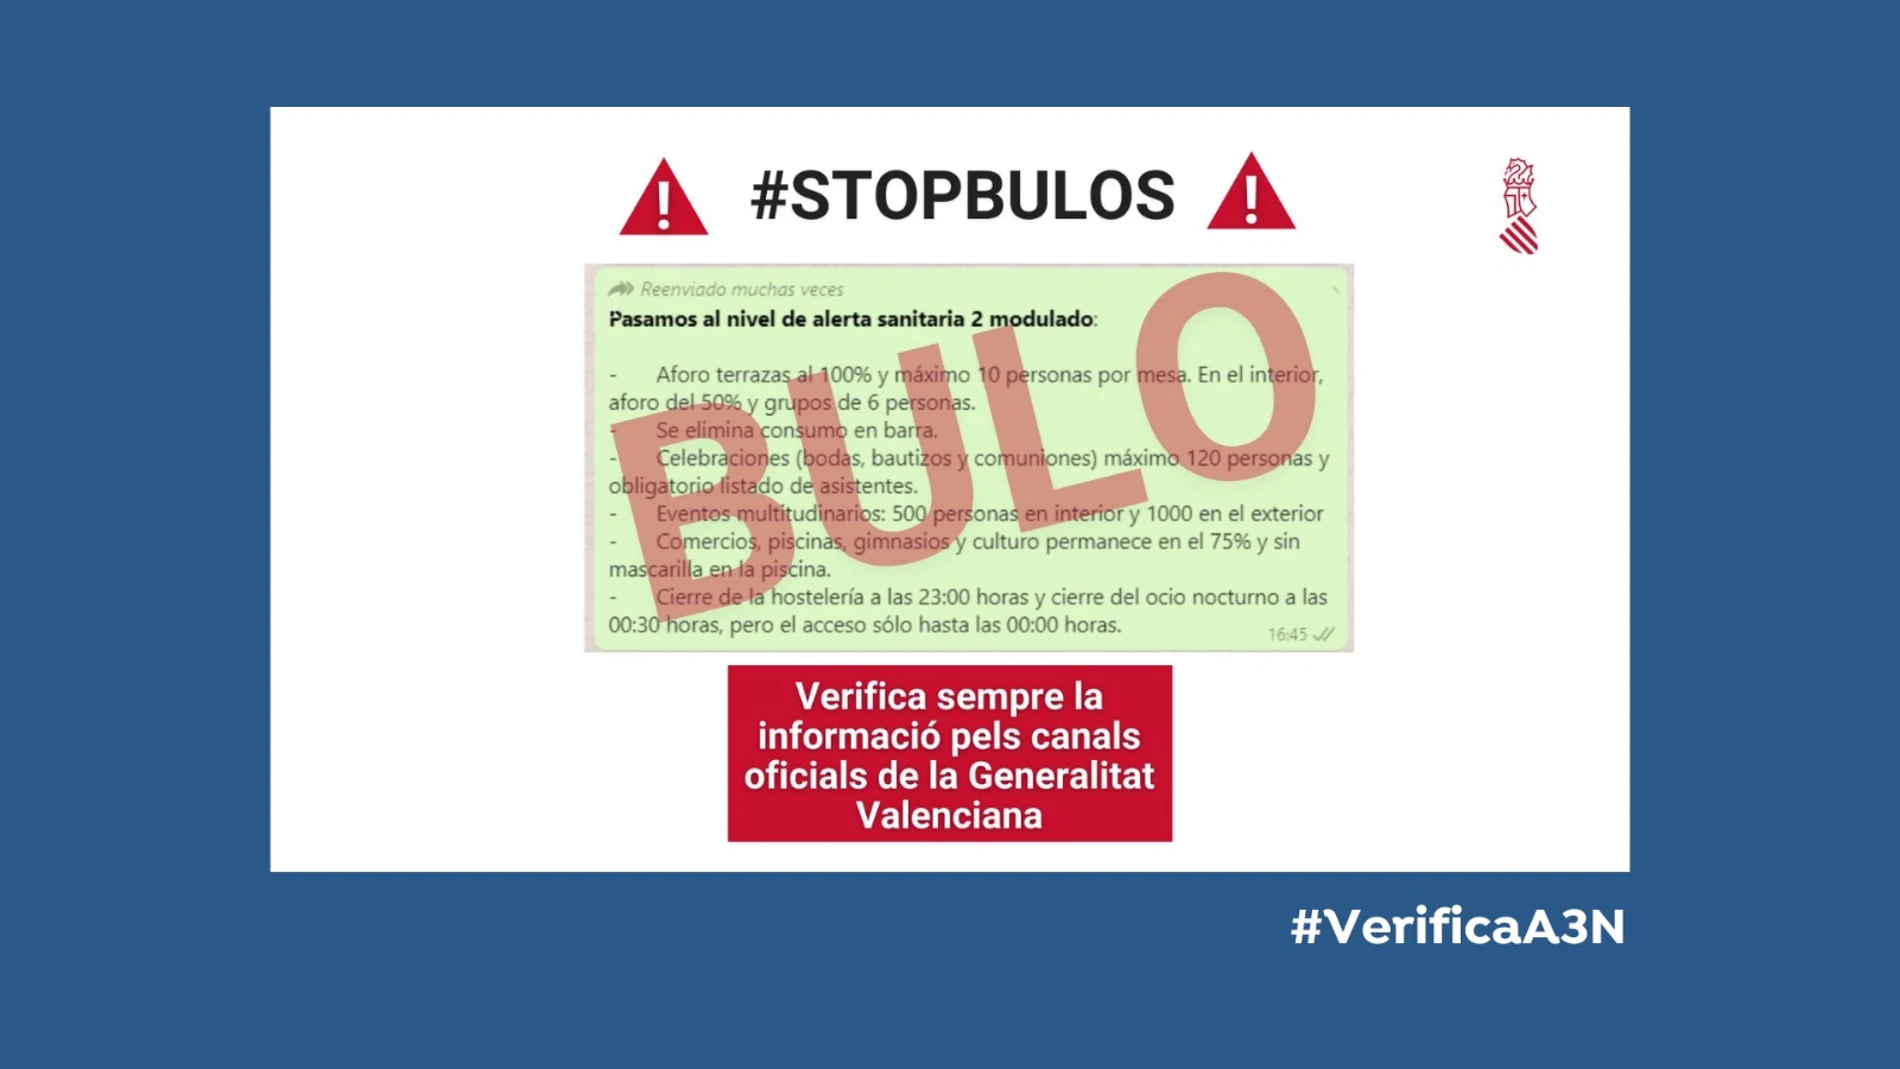  La Generalitat Valenciana desmiente un bulo con restricciones no oficiales para frenar la expansión del coronavirus